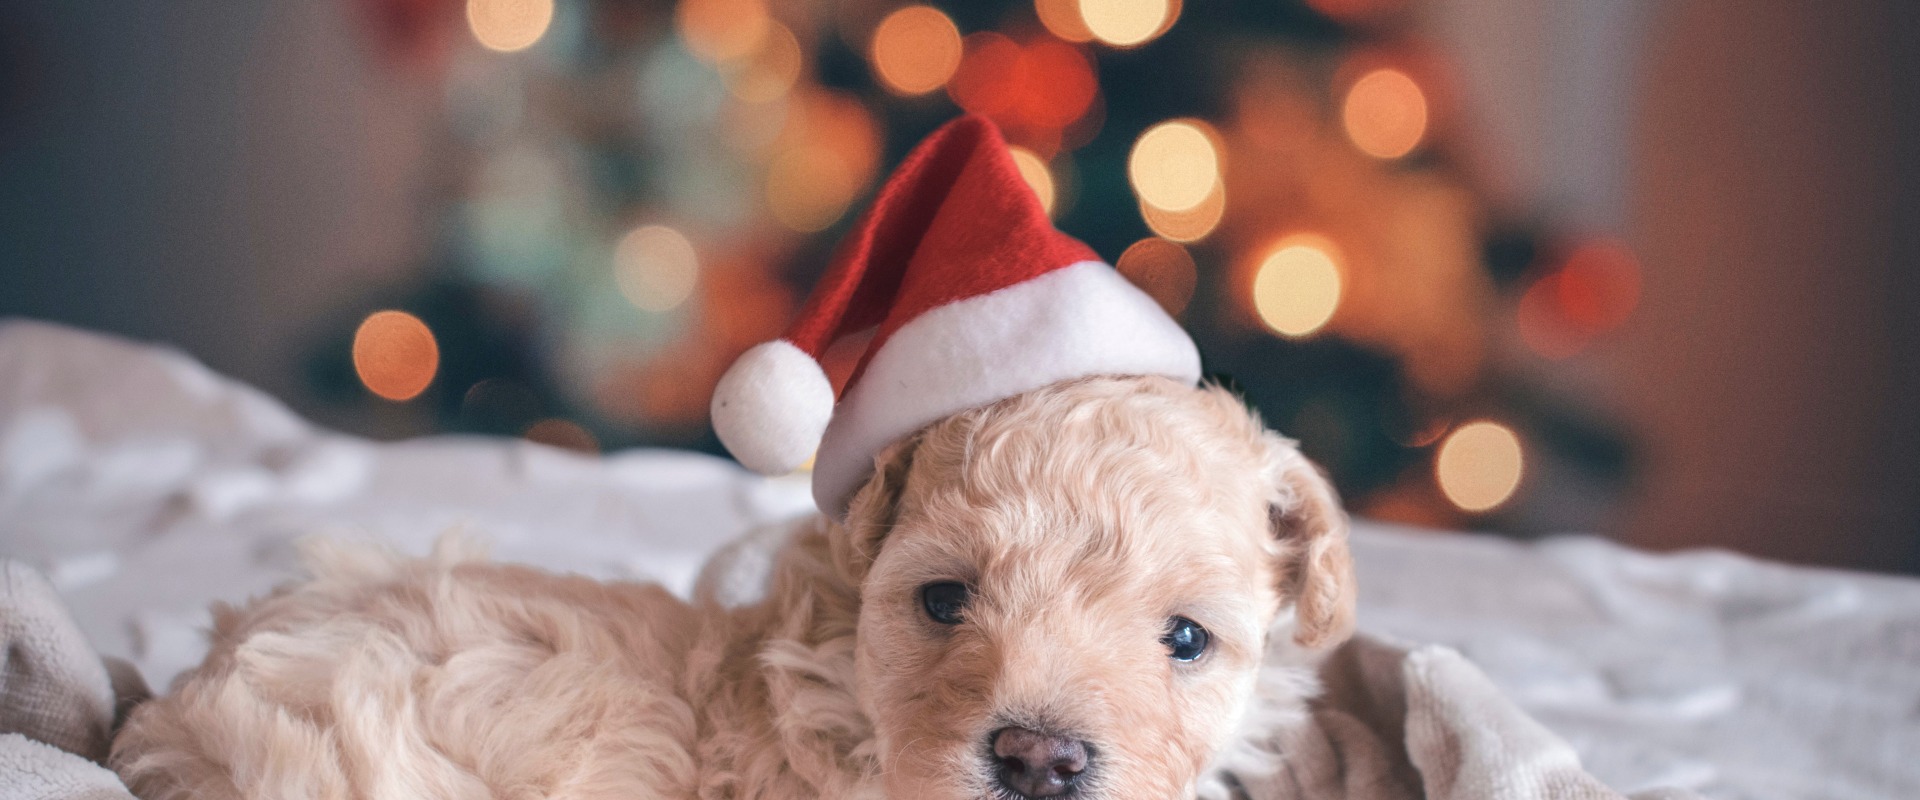 Best Christmas Gift dog grooming kit